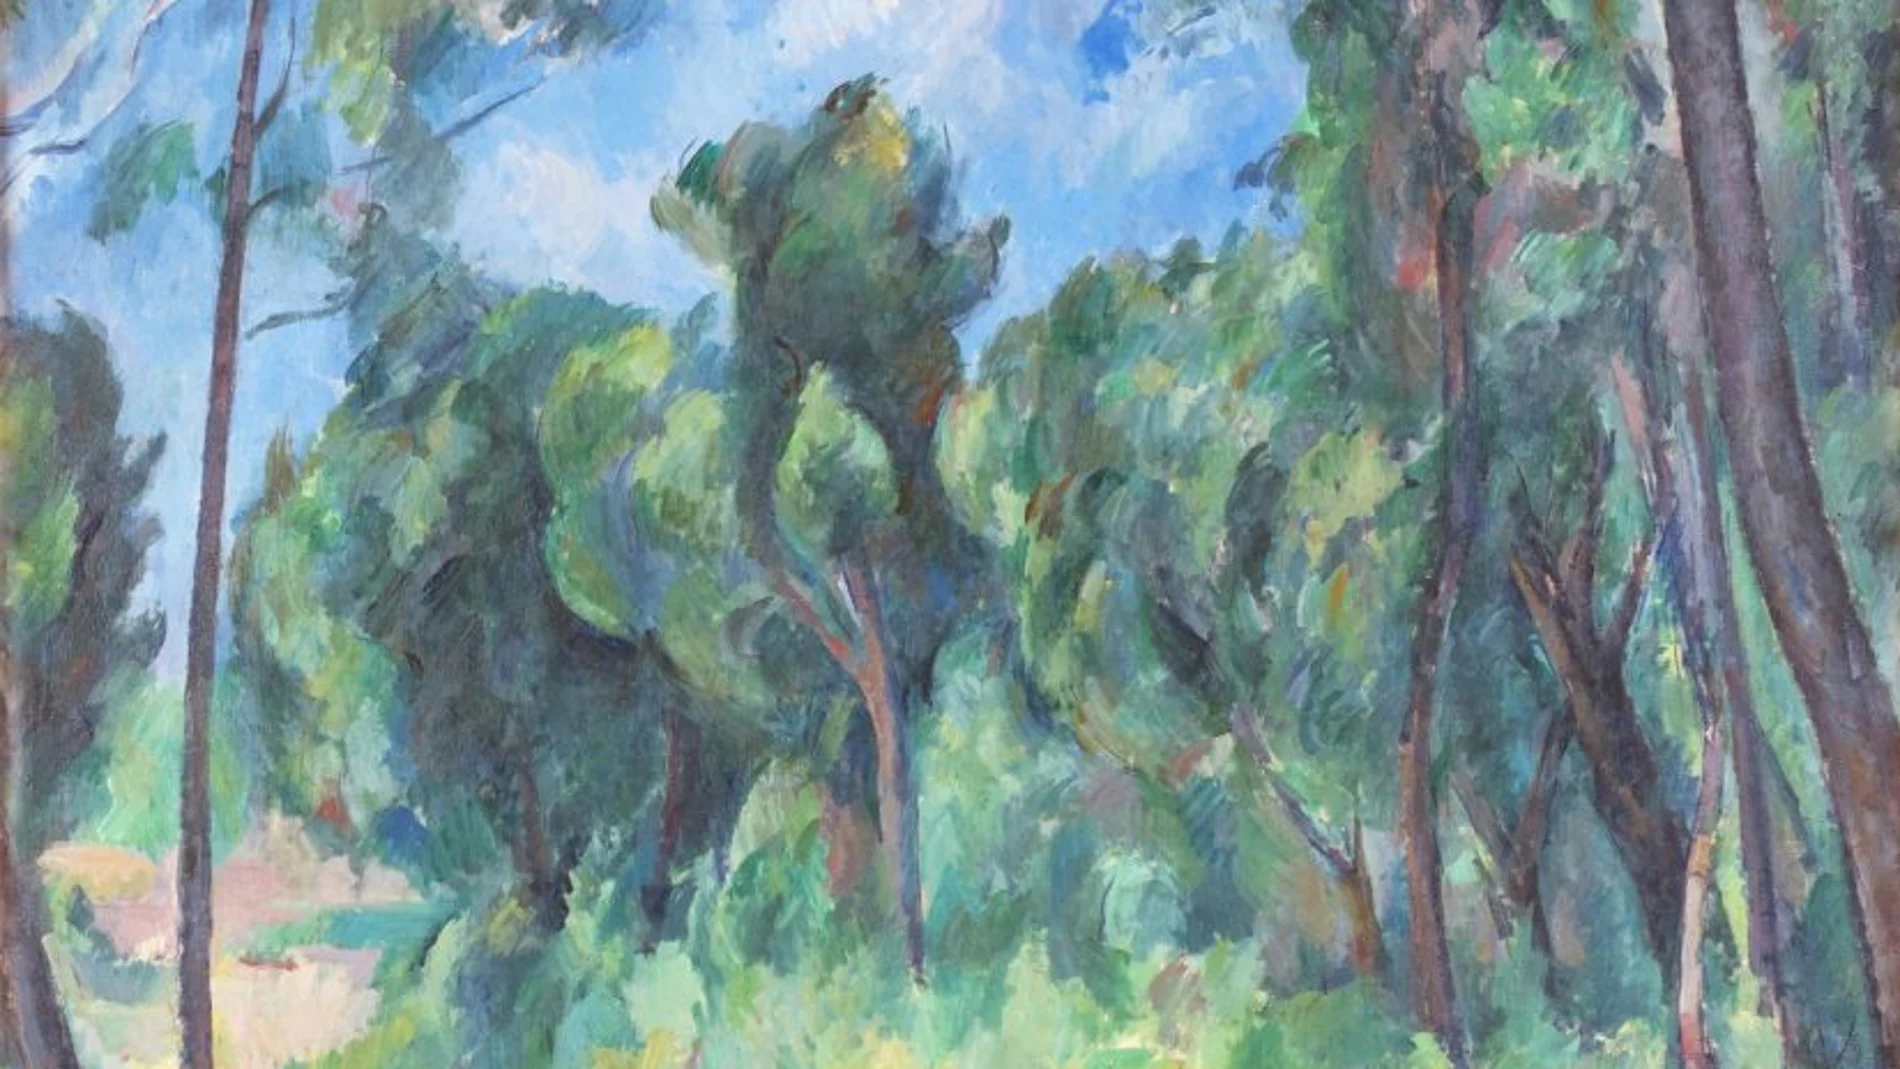 Paul Cézanne, Clairière (The Glade)